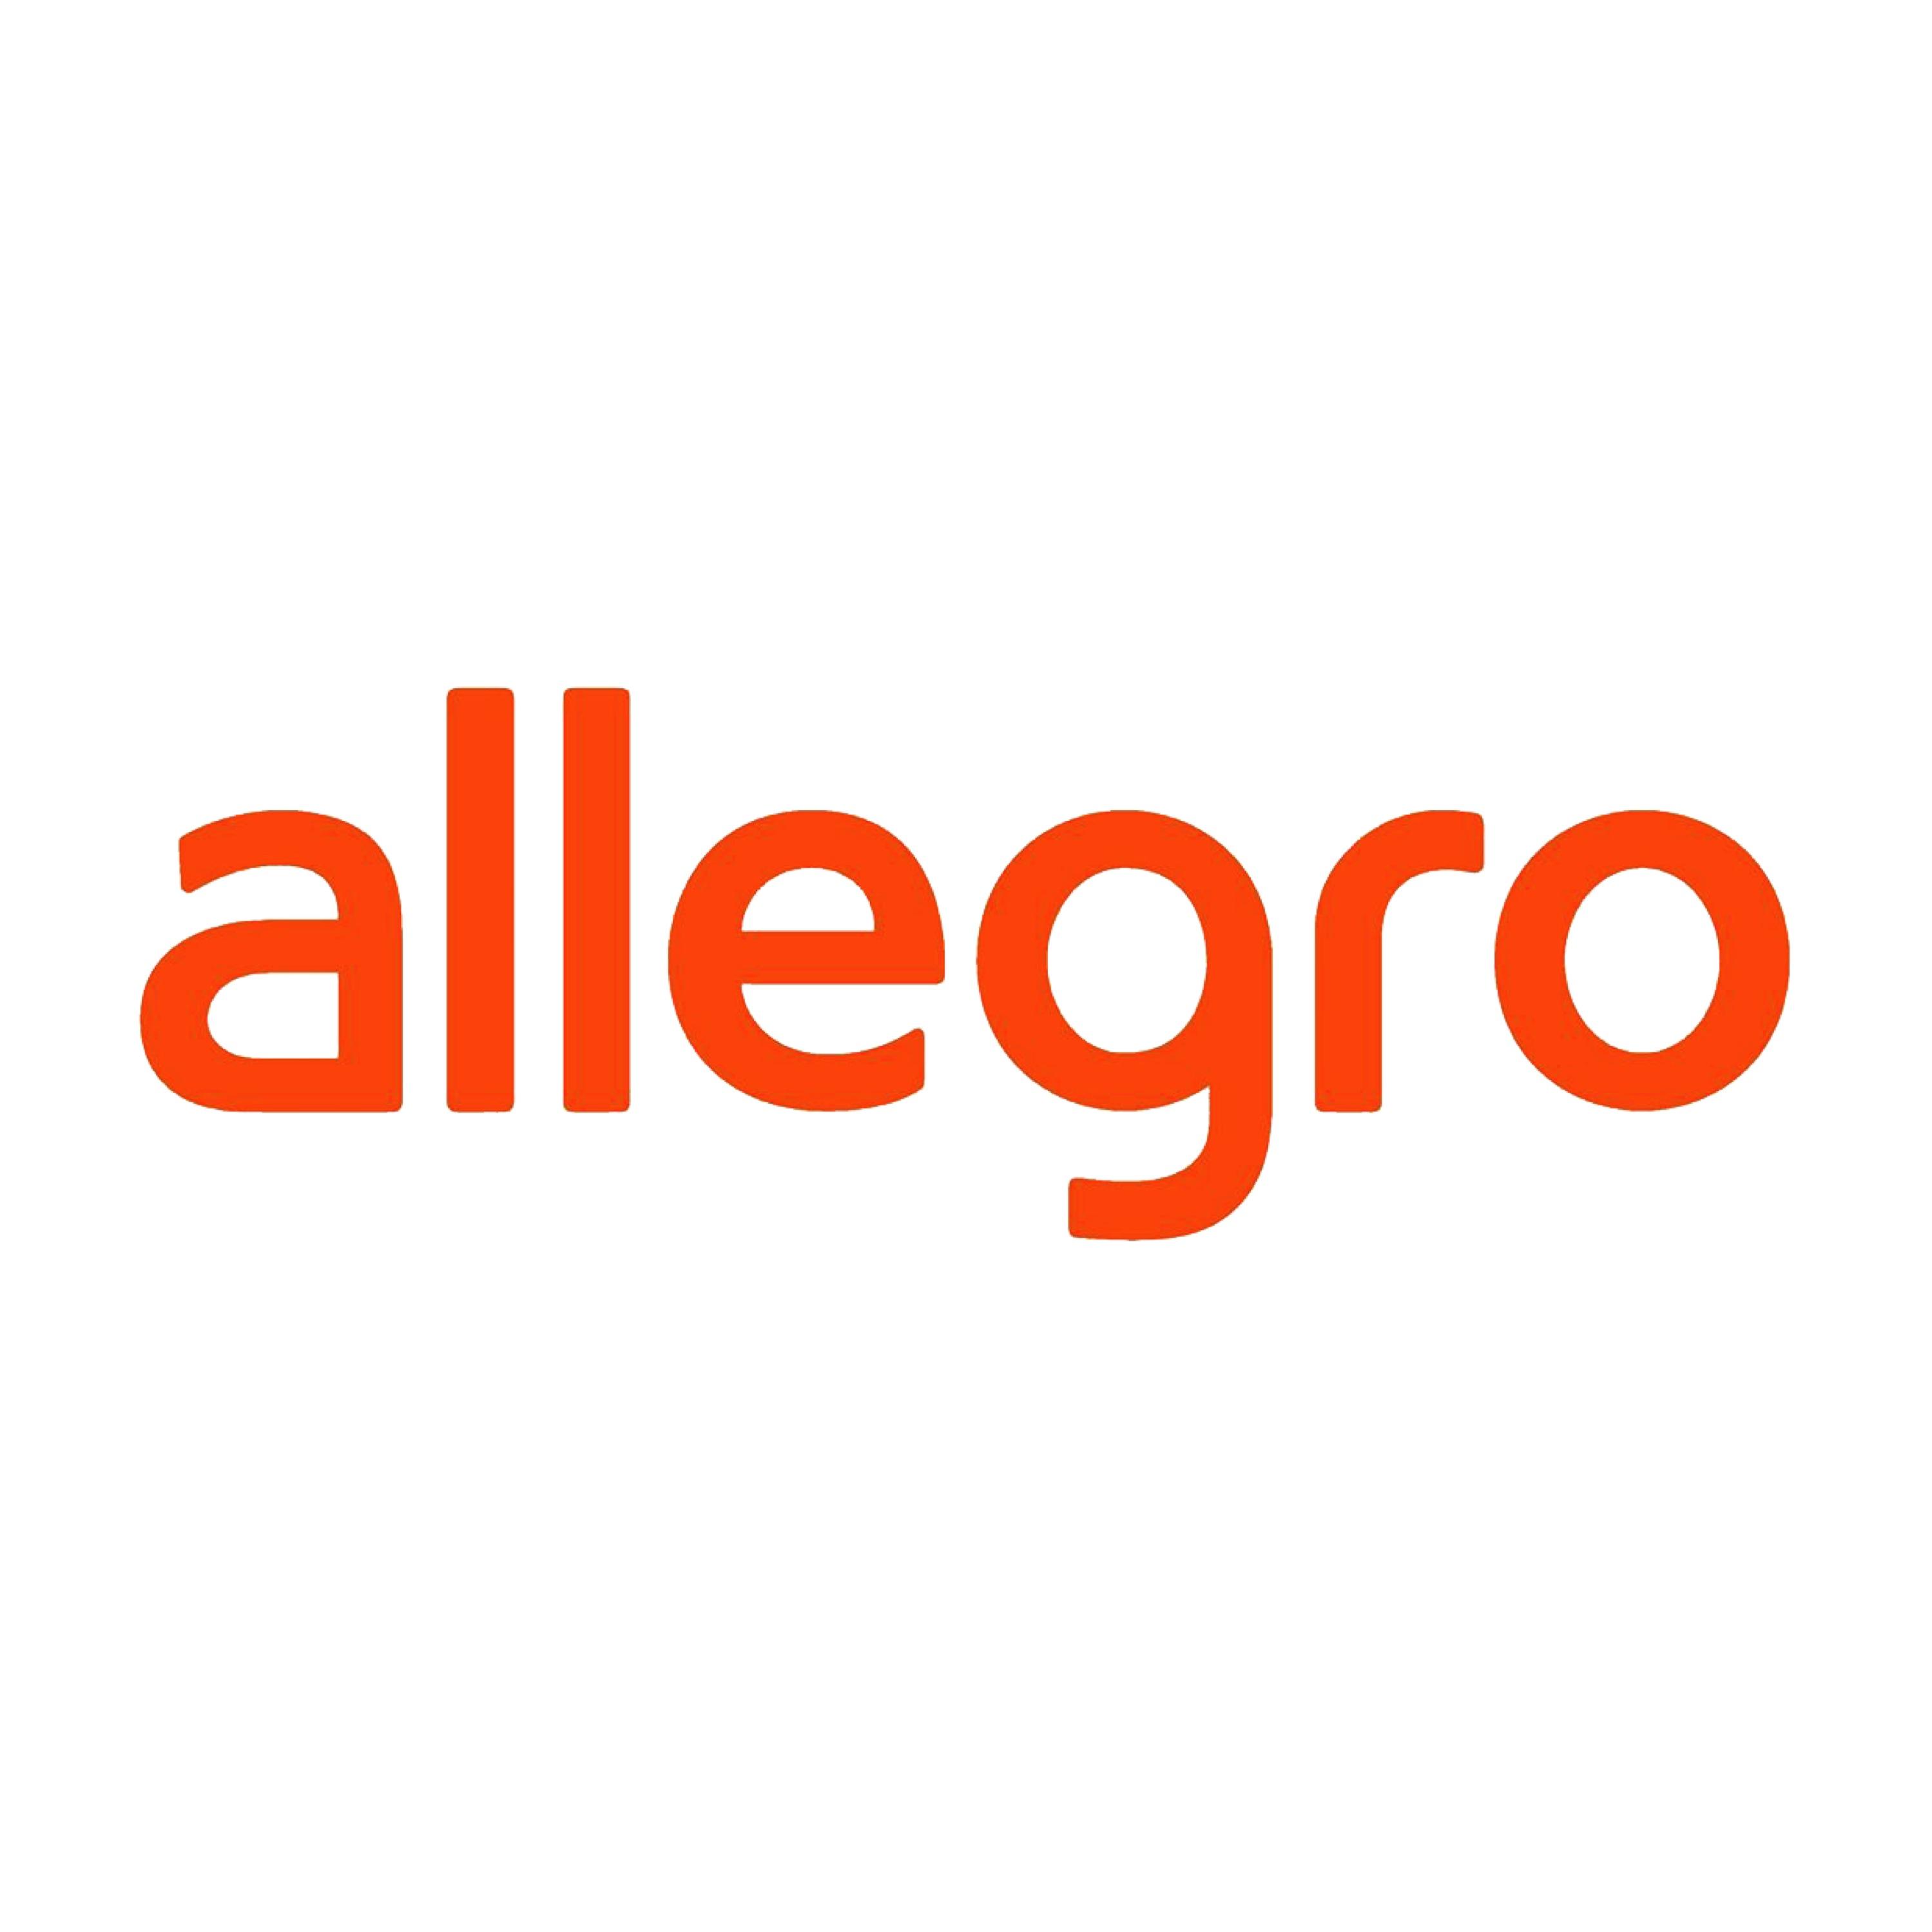 Allegro Logo - Allegro Png & Free Allegro.png Transparent Images #7953 - PNGio